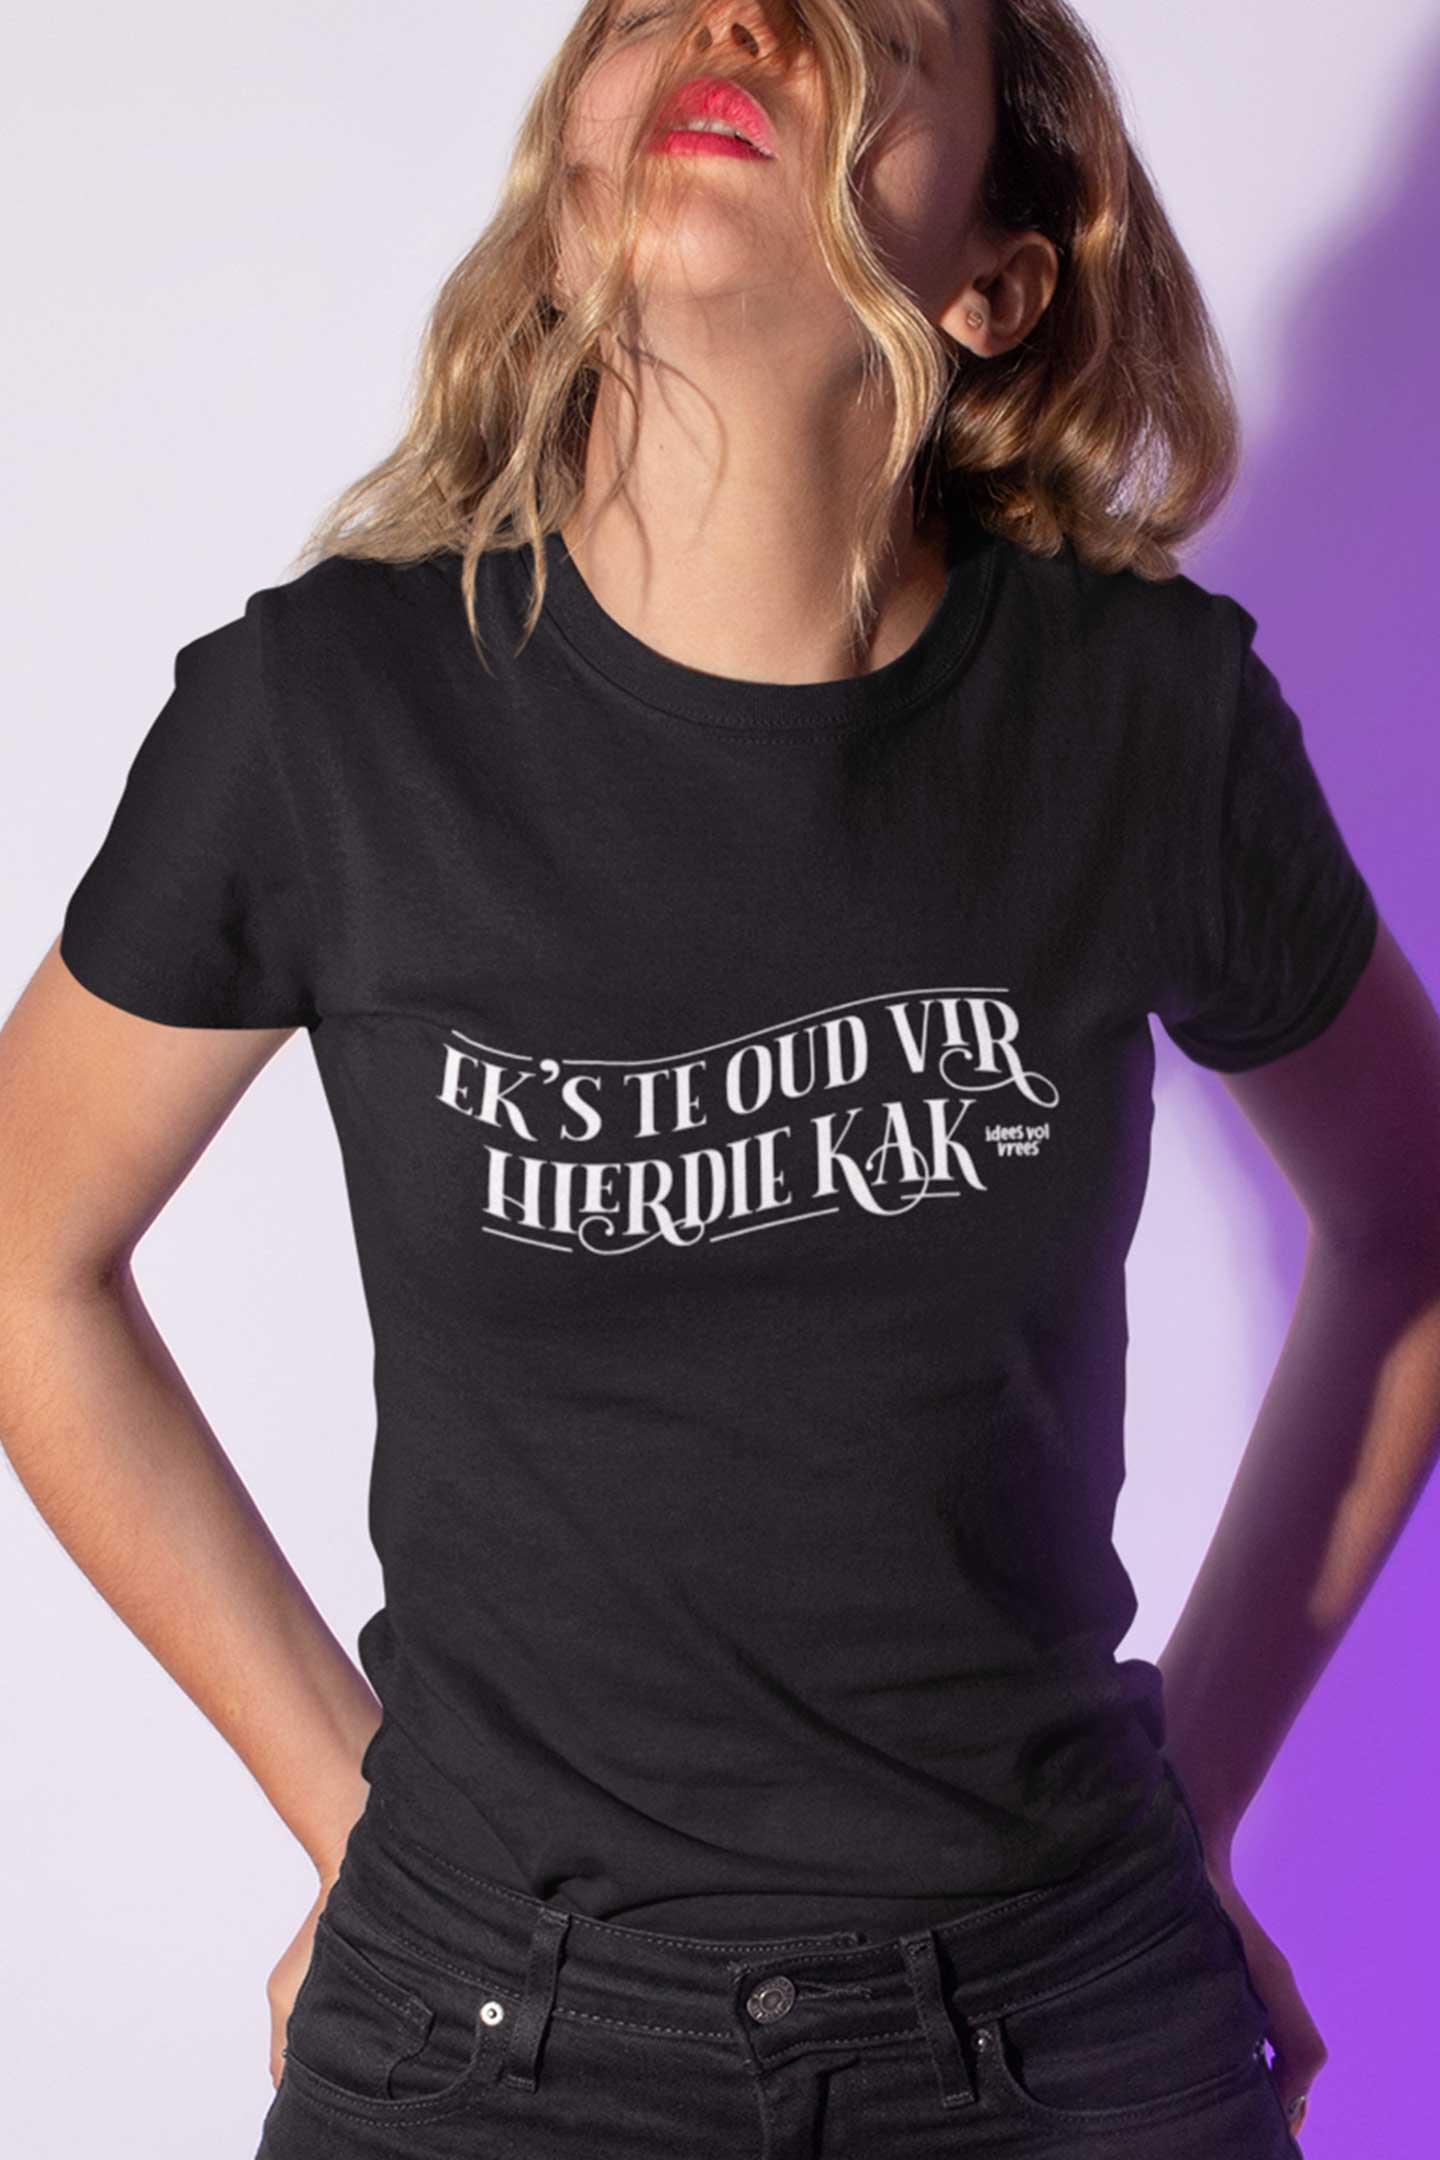 Idees Vol Vrees® "Ek's te oud vir hierdie kak" Women's T-shirt